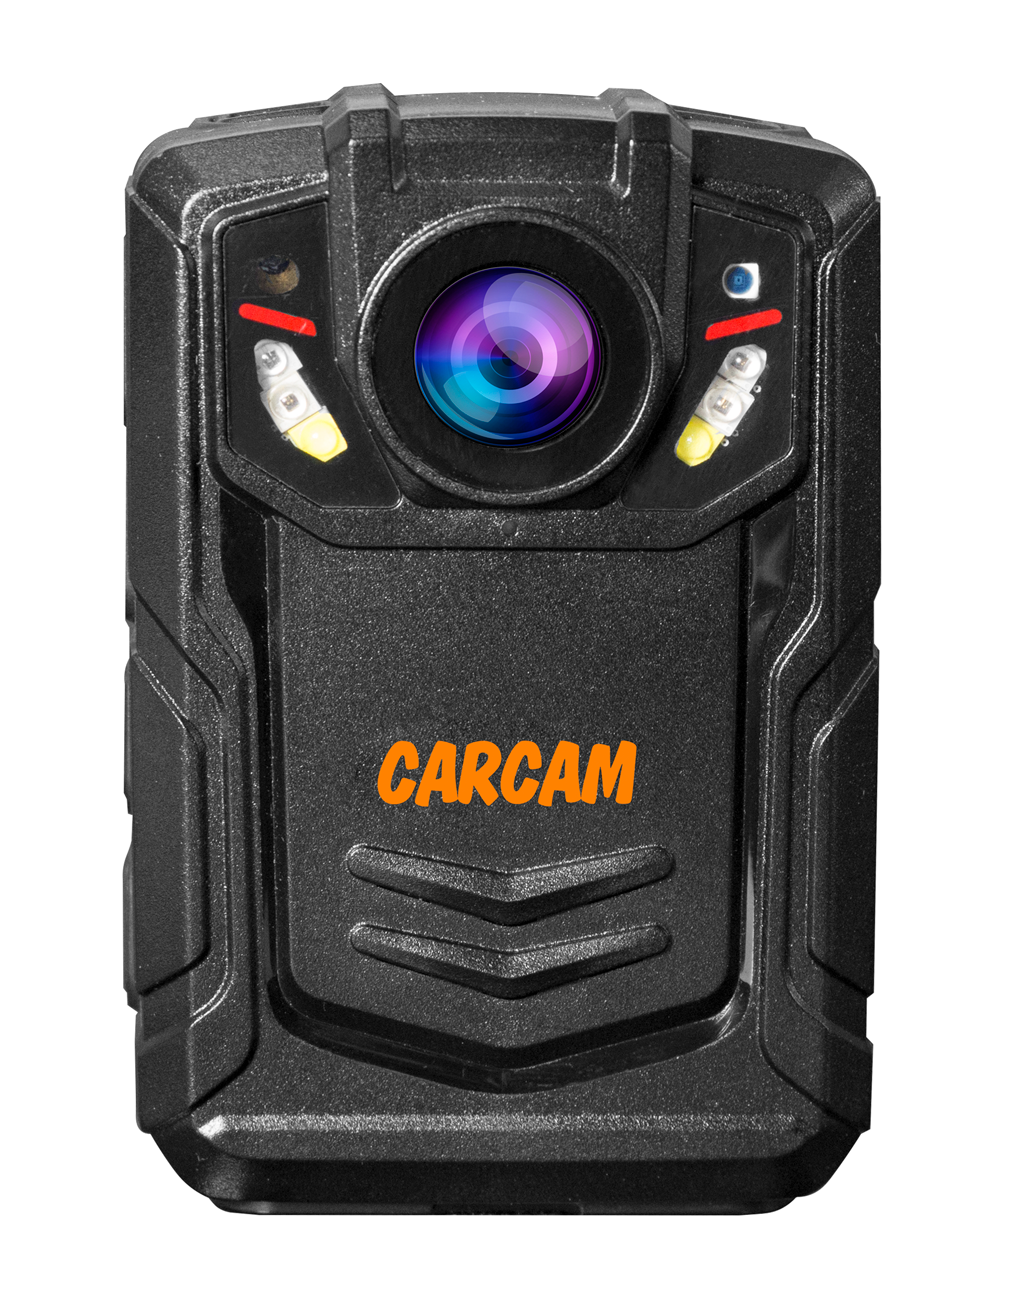 Персональный Quad HD видеорегистратор  CARCAM COMBAT 2S/4G 64GB персональный quad hd видеорегистратор carcam combat 2s 4g 128gb